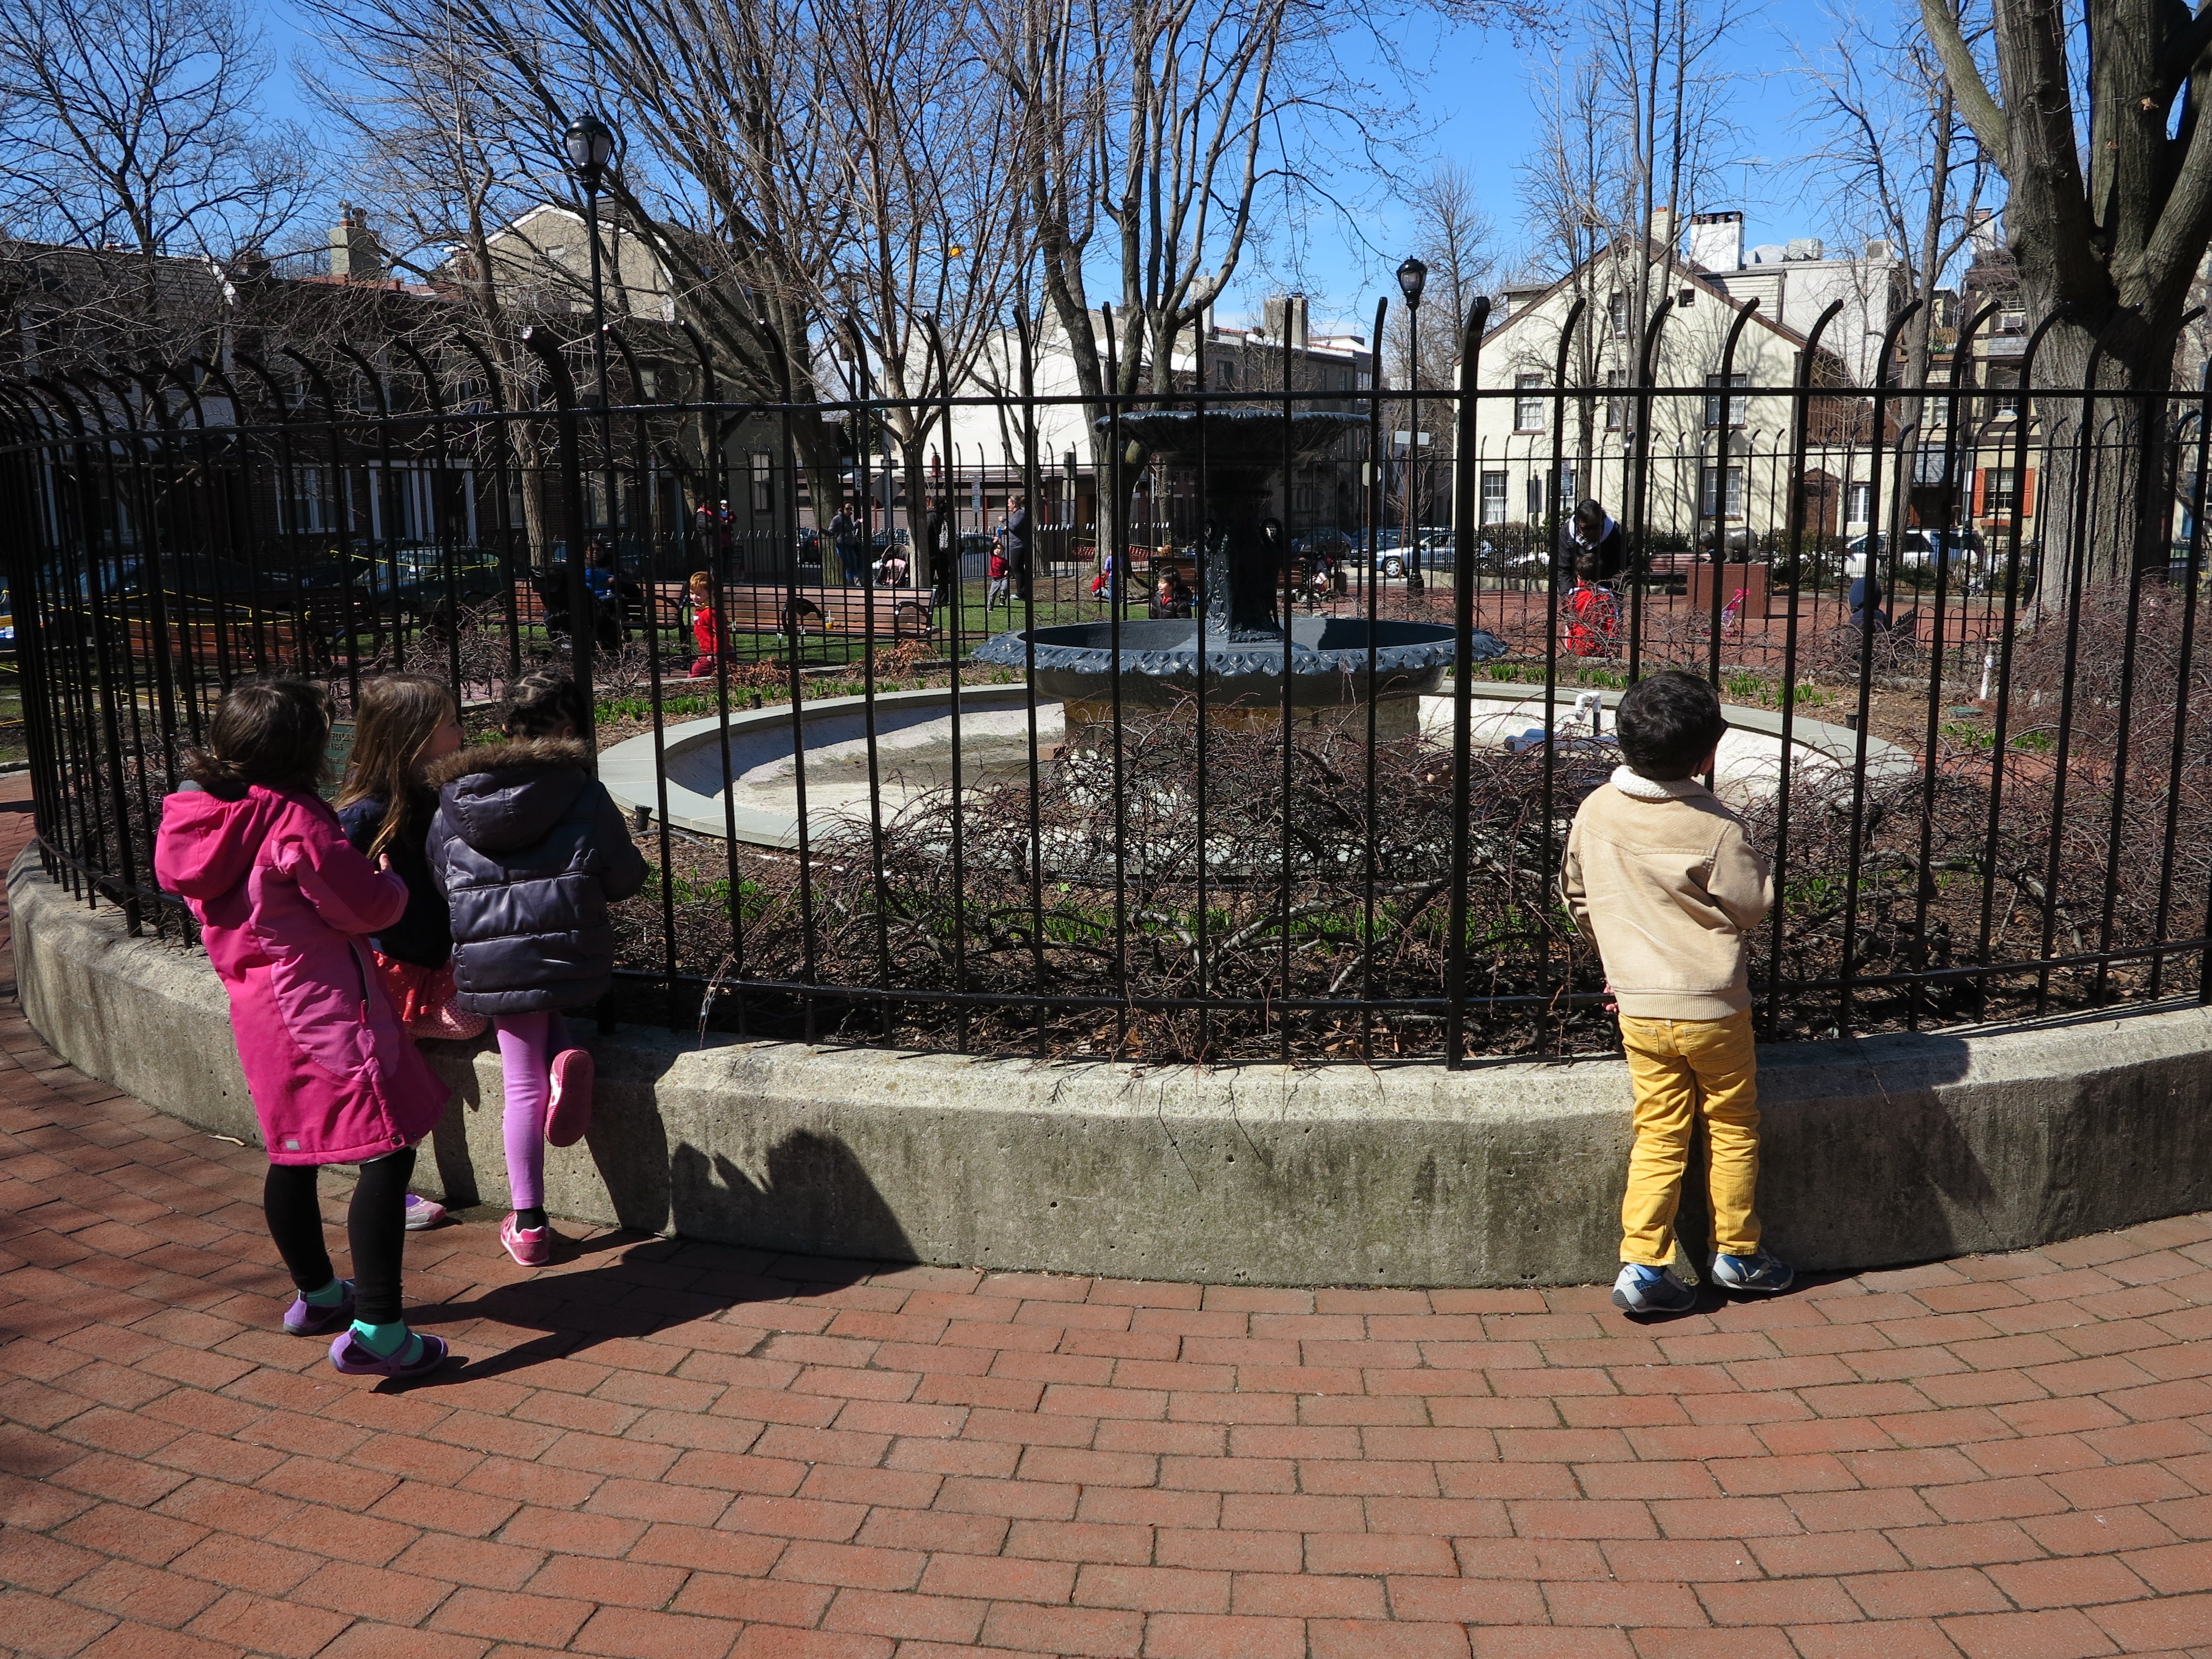 Kiddos in Fitler Square, April 2014